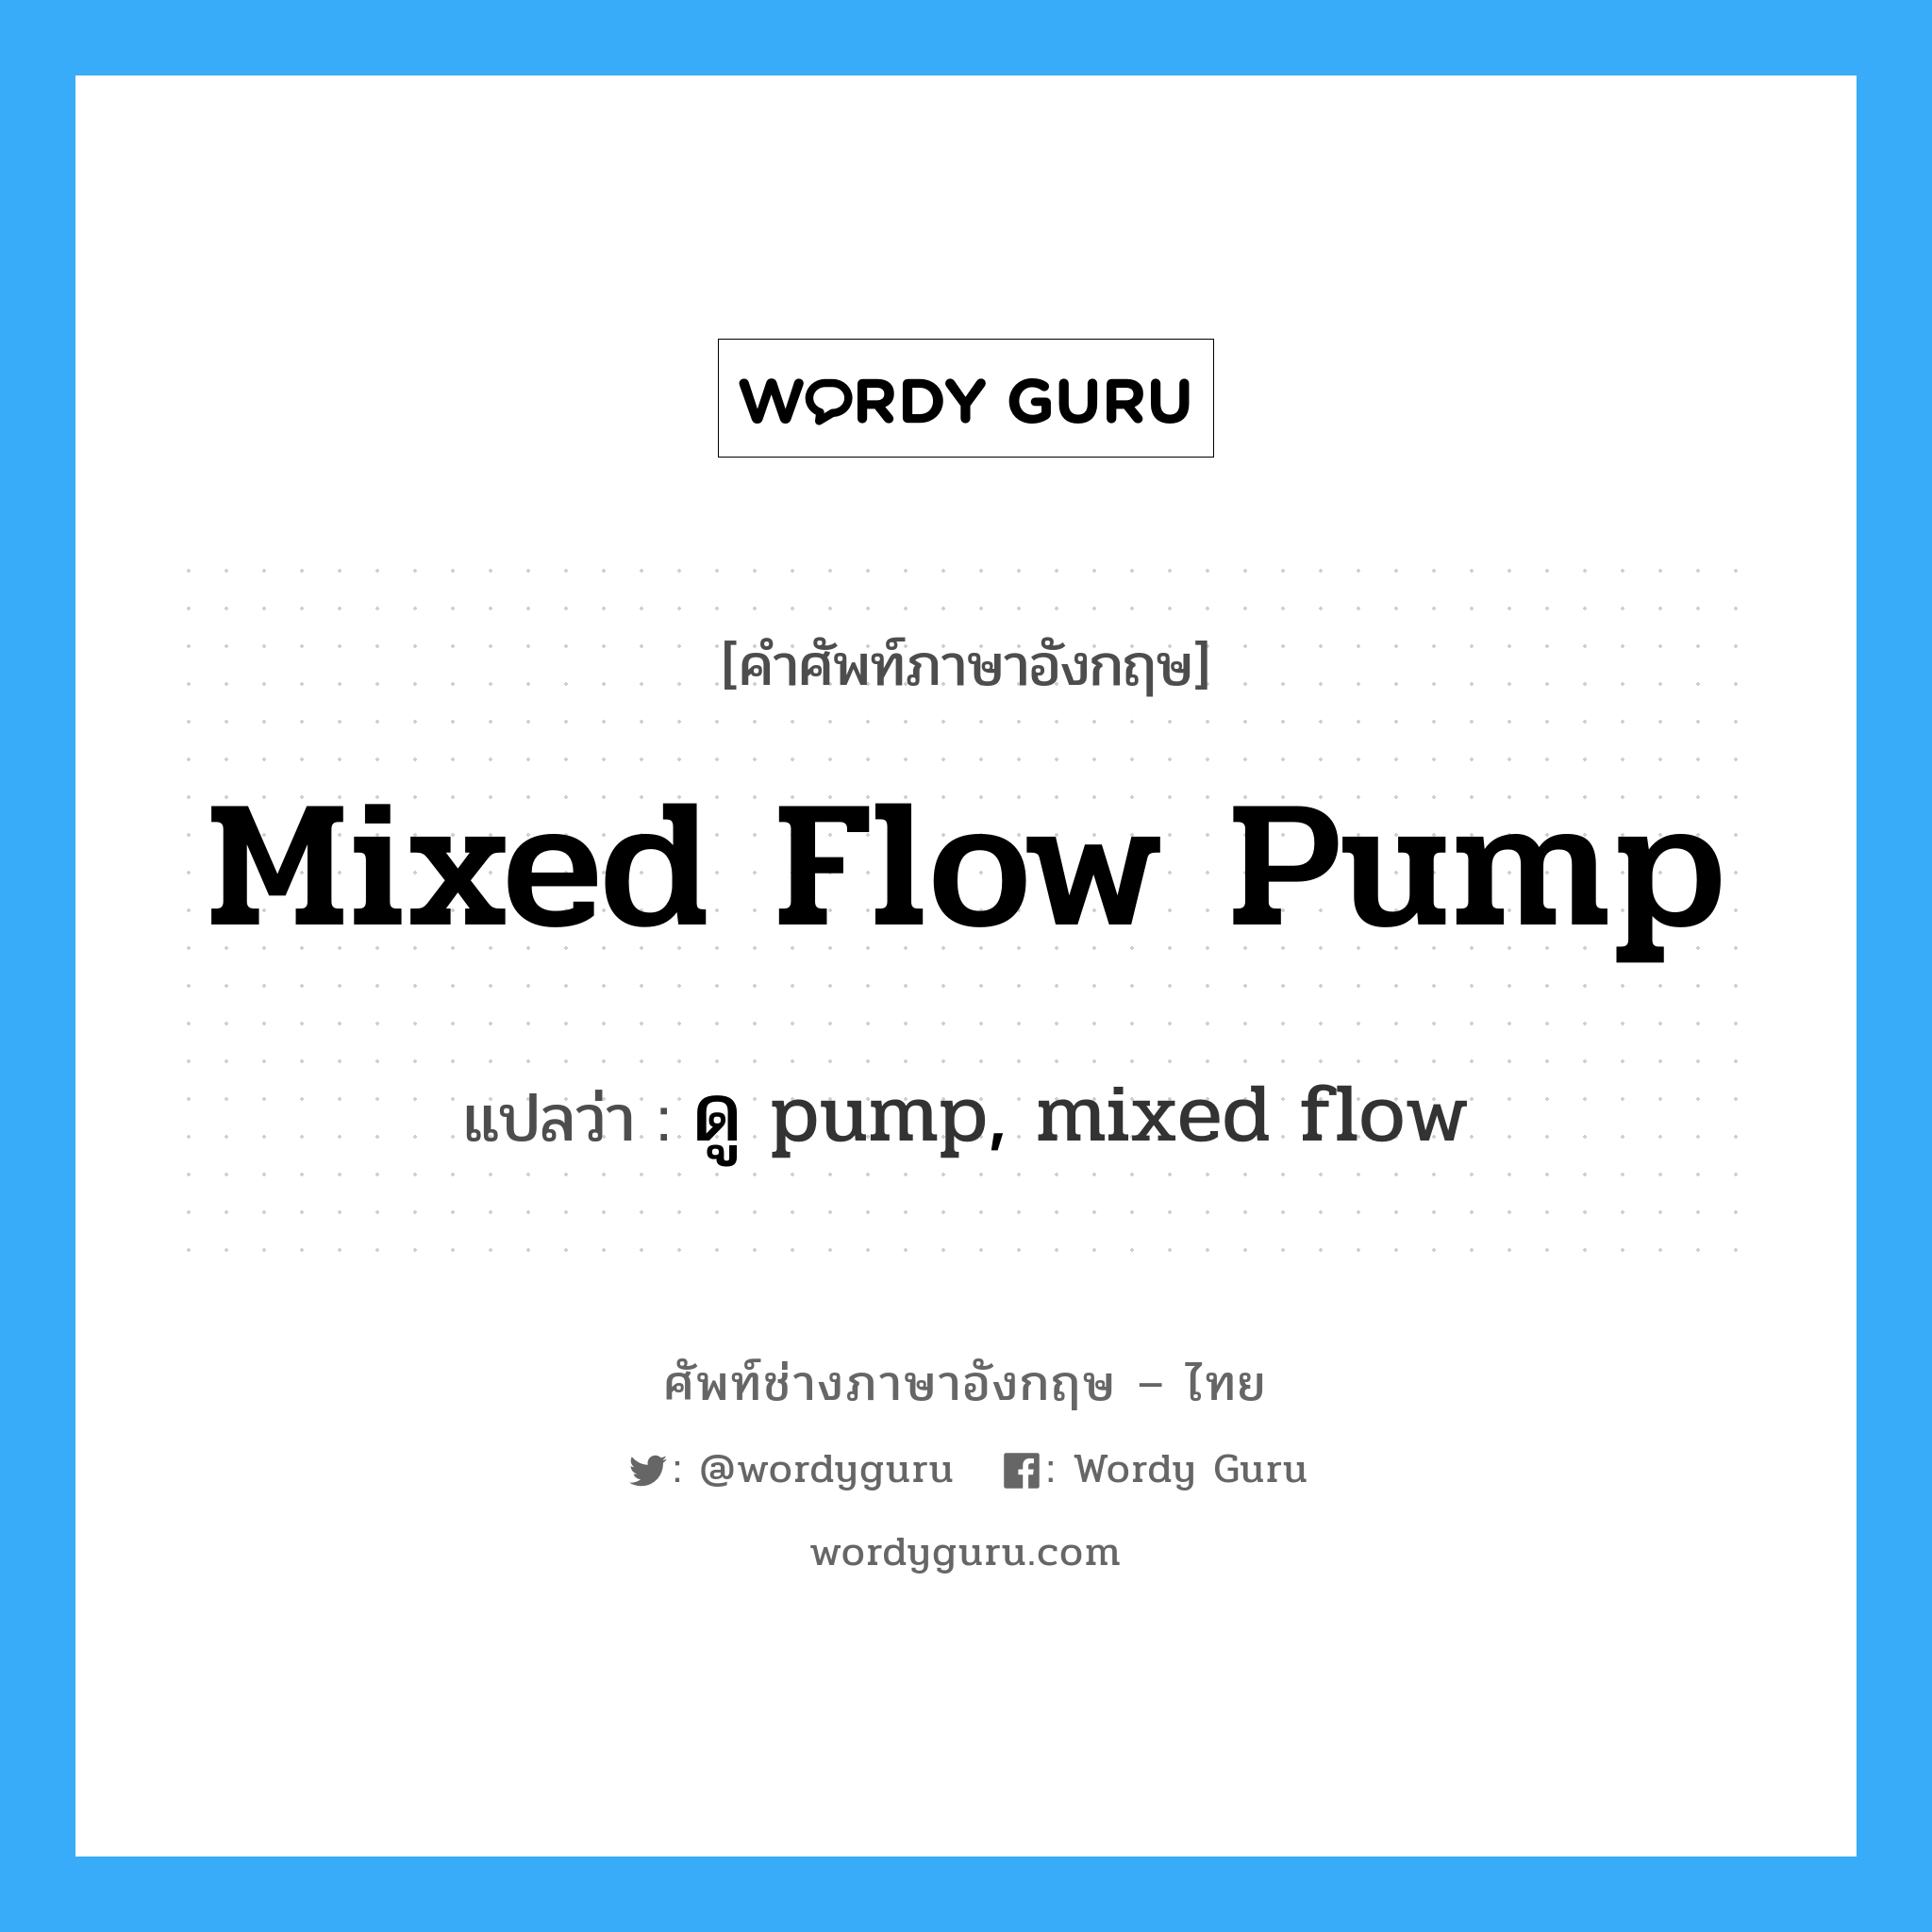 mixed flow pump แปลว่า?, คำศัพท์ช่างภาษาอังกฤษ - ไทย mixed flow pump คำศัพท์ภาษาอังกฤษ mixed flow pump แปลว่า ดู pump, mixed flow